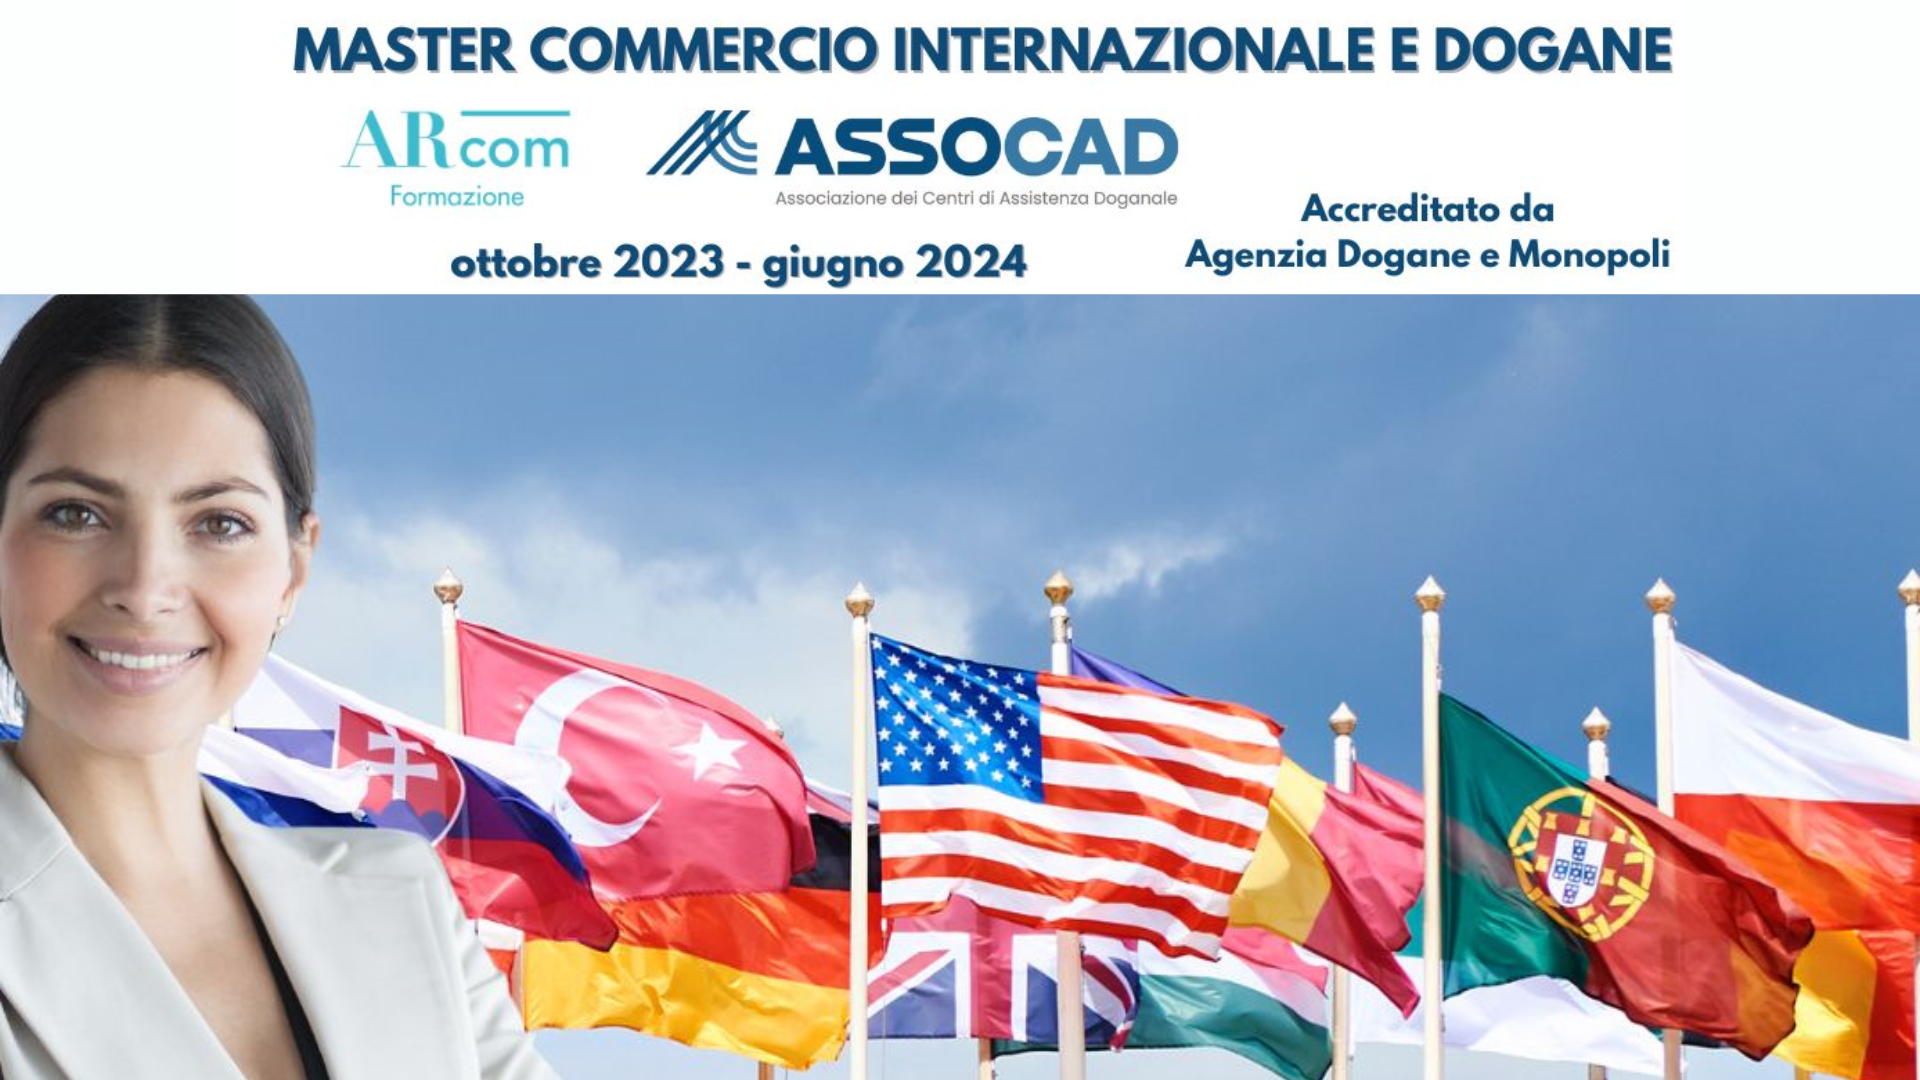 Master Commercio Internazionale e dogane - convenzione per i nostri associati